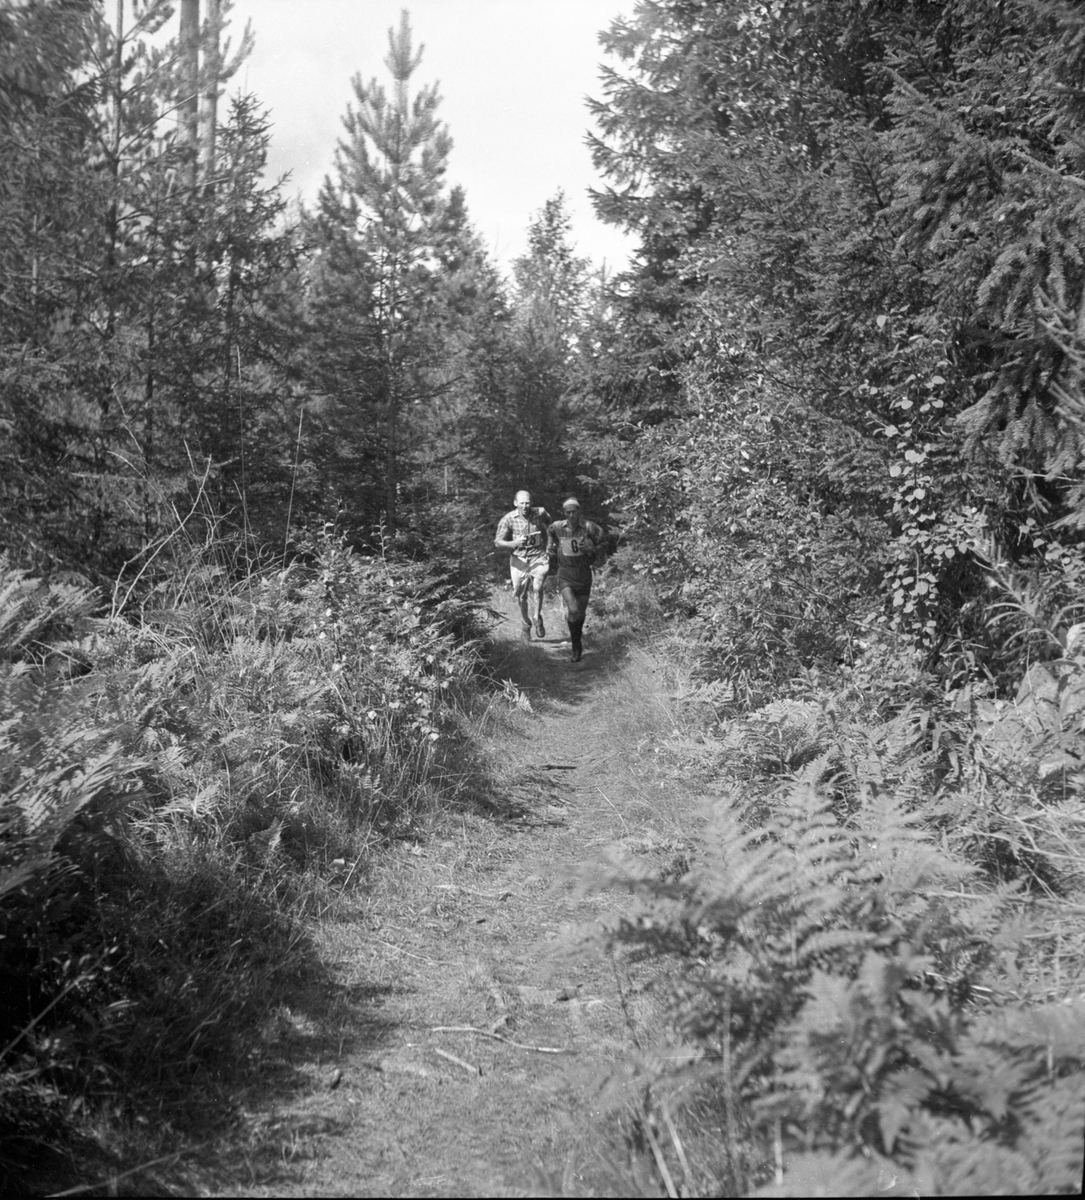 Landskapsmatchen i orientering mellan Gästrikland och Uppland.
1946